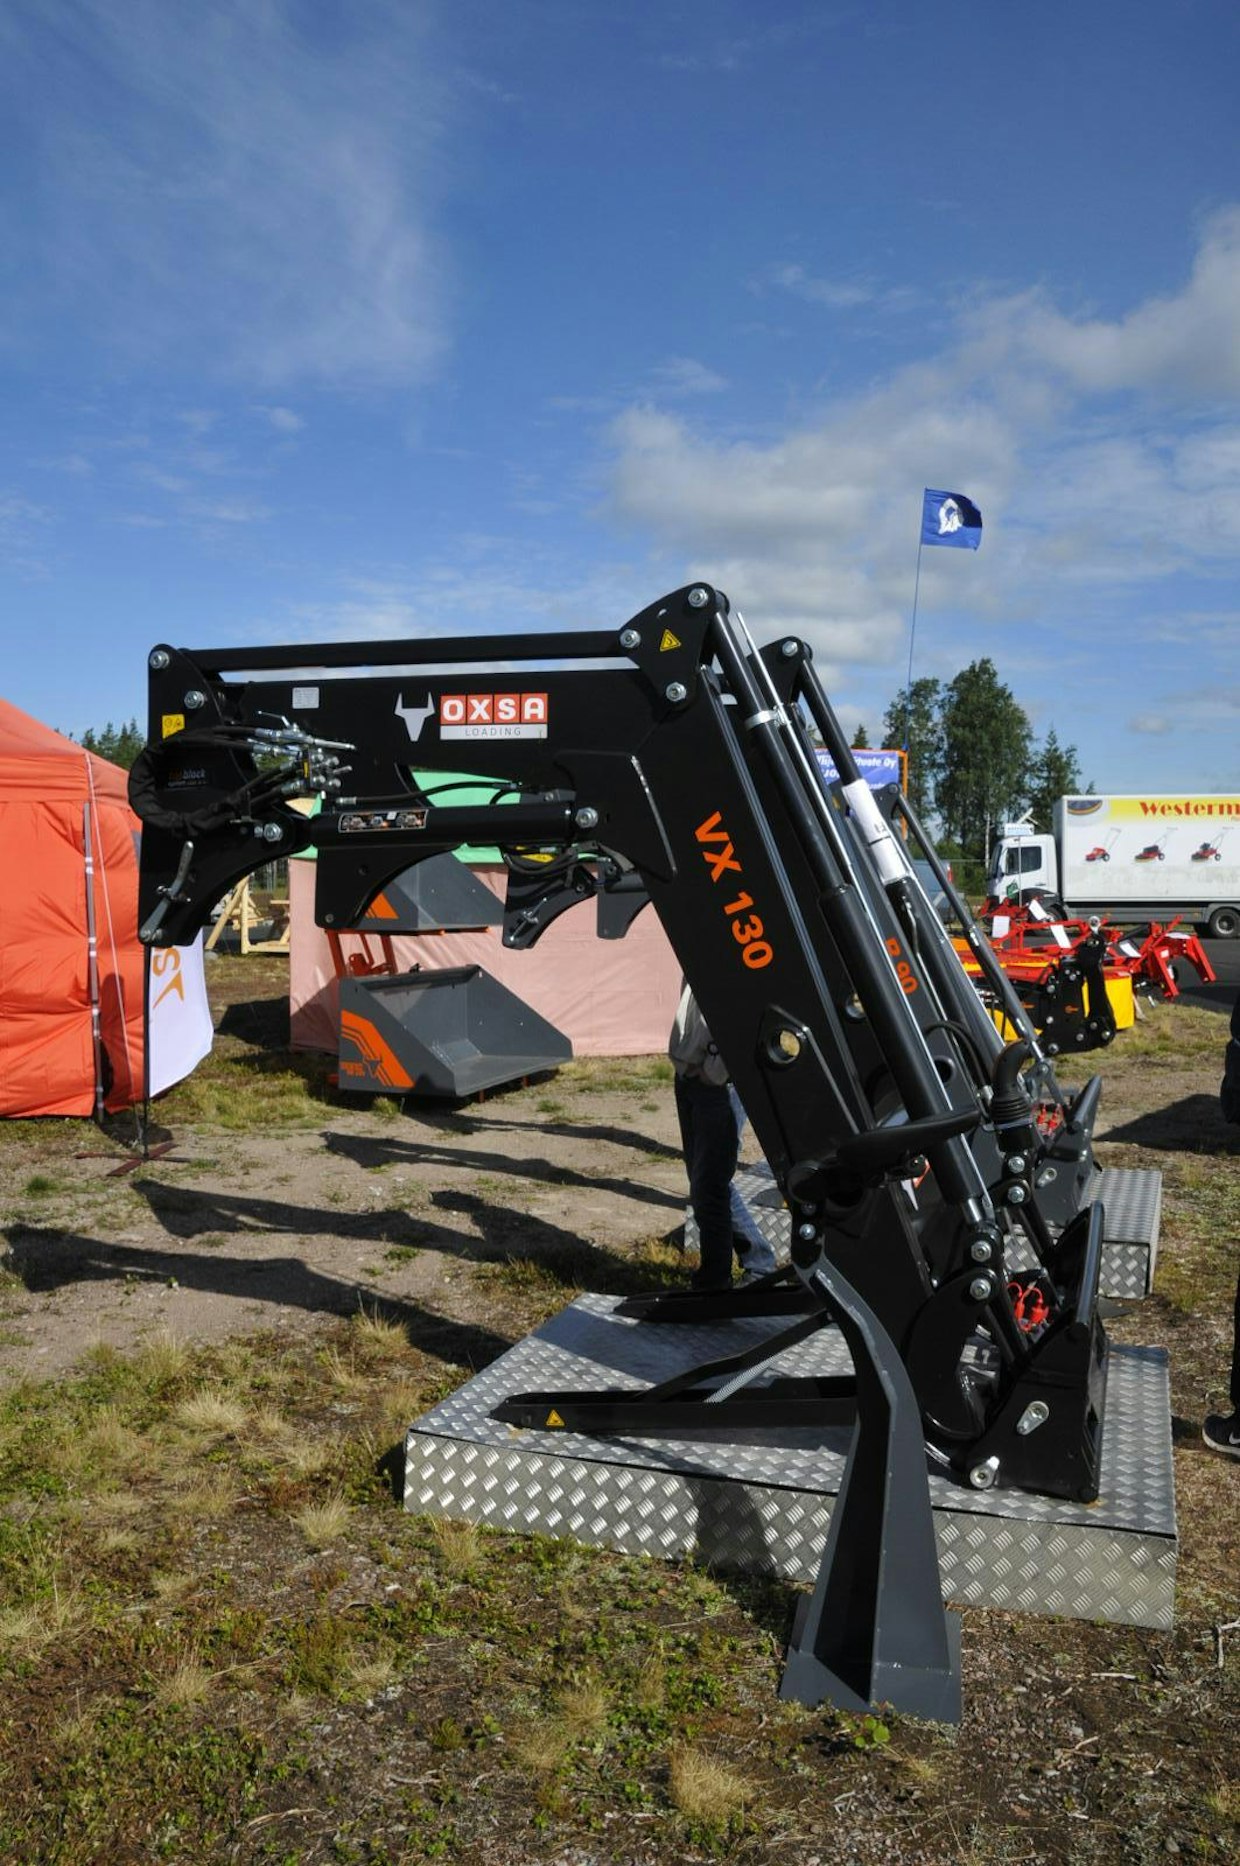 Suomeen on tullut uusi etukuormaajamerkki. Oxsa nimellä myytävä kuormaaja on Itävaltalainen Hauer, mallisto on laaja sovitteita on saatavana lähes kaikkiin suomessa myytäviin traktoreihin. (SN)